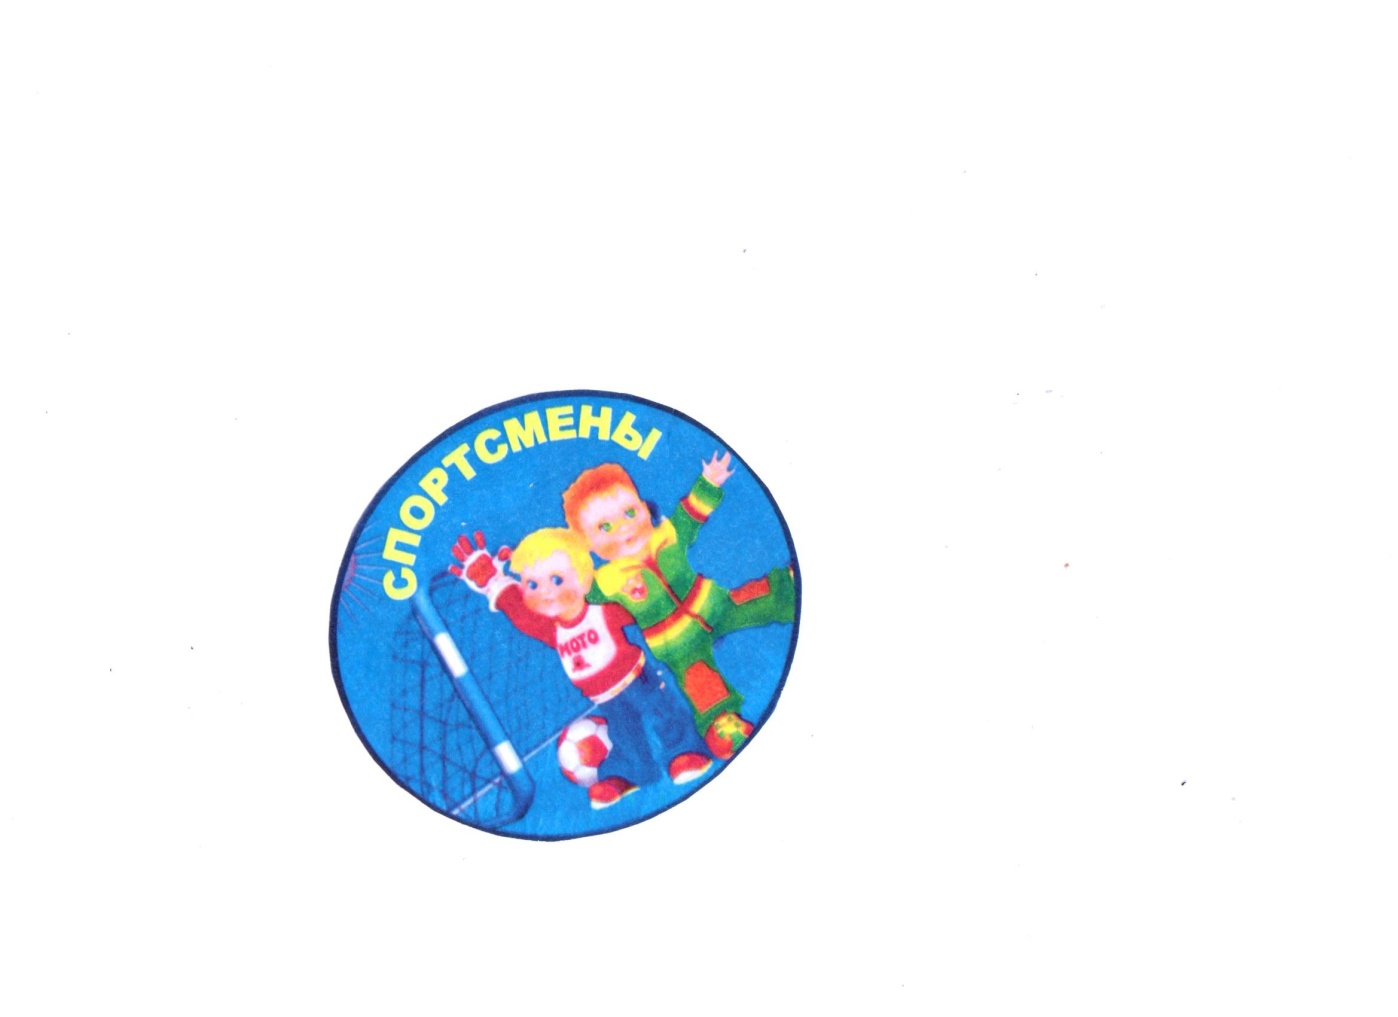 Названия команд на 23 февраля в школе. Спортивные эмблемы для детей. Спортивная эмблема для детского сада. Эмблемы для детских спортивных соревнований. Эмблема спортивной команды.